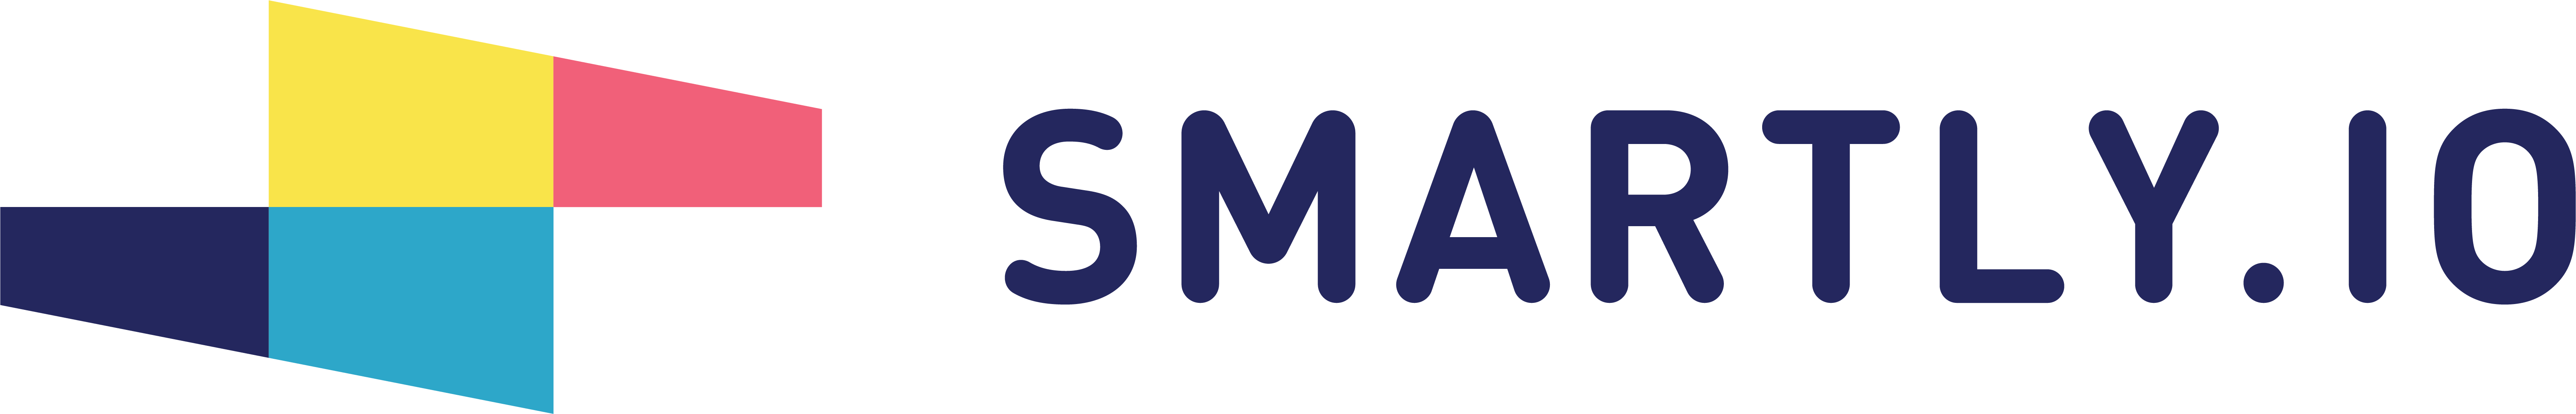 Smartly.io logo